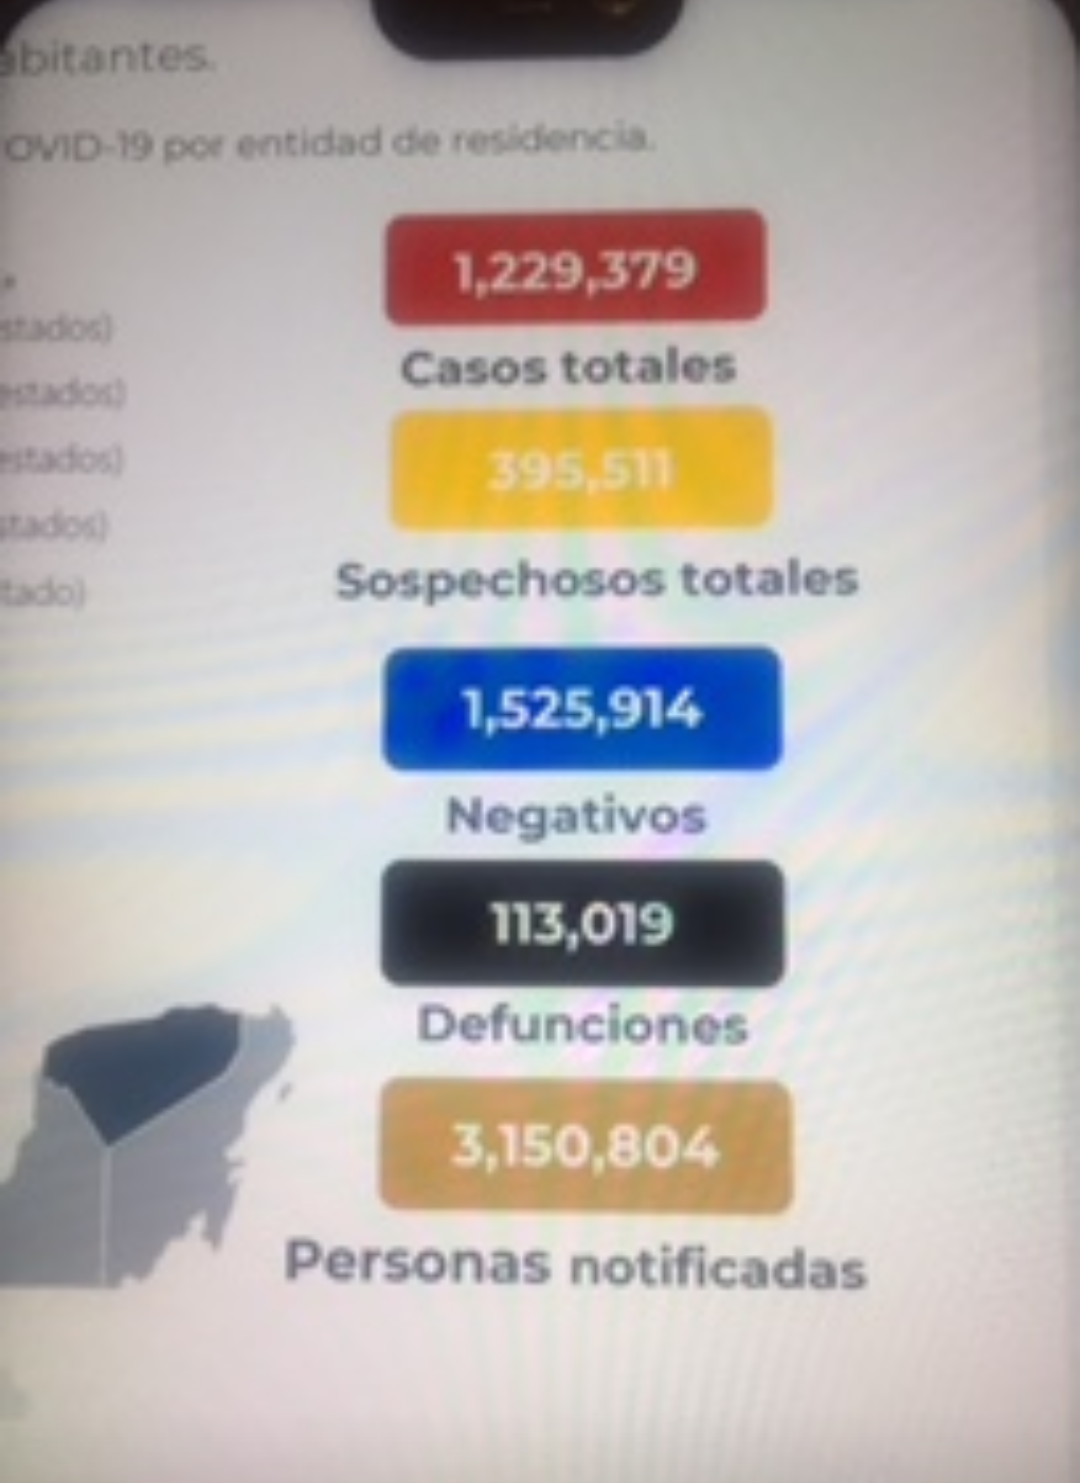 Cierra México la semana con 113 mil 19 muertos por covid-19.